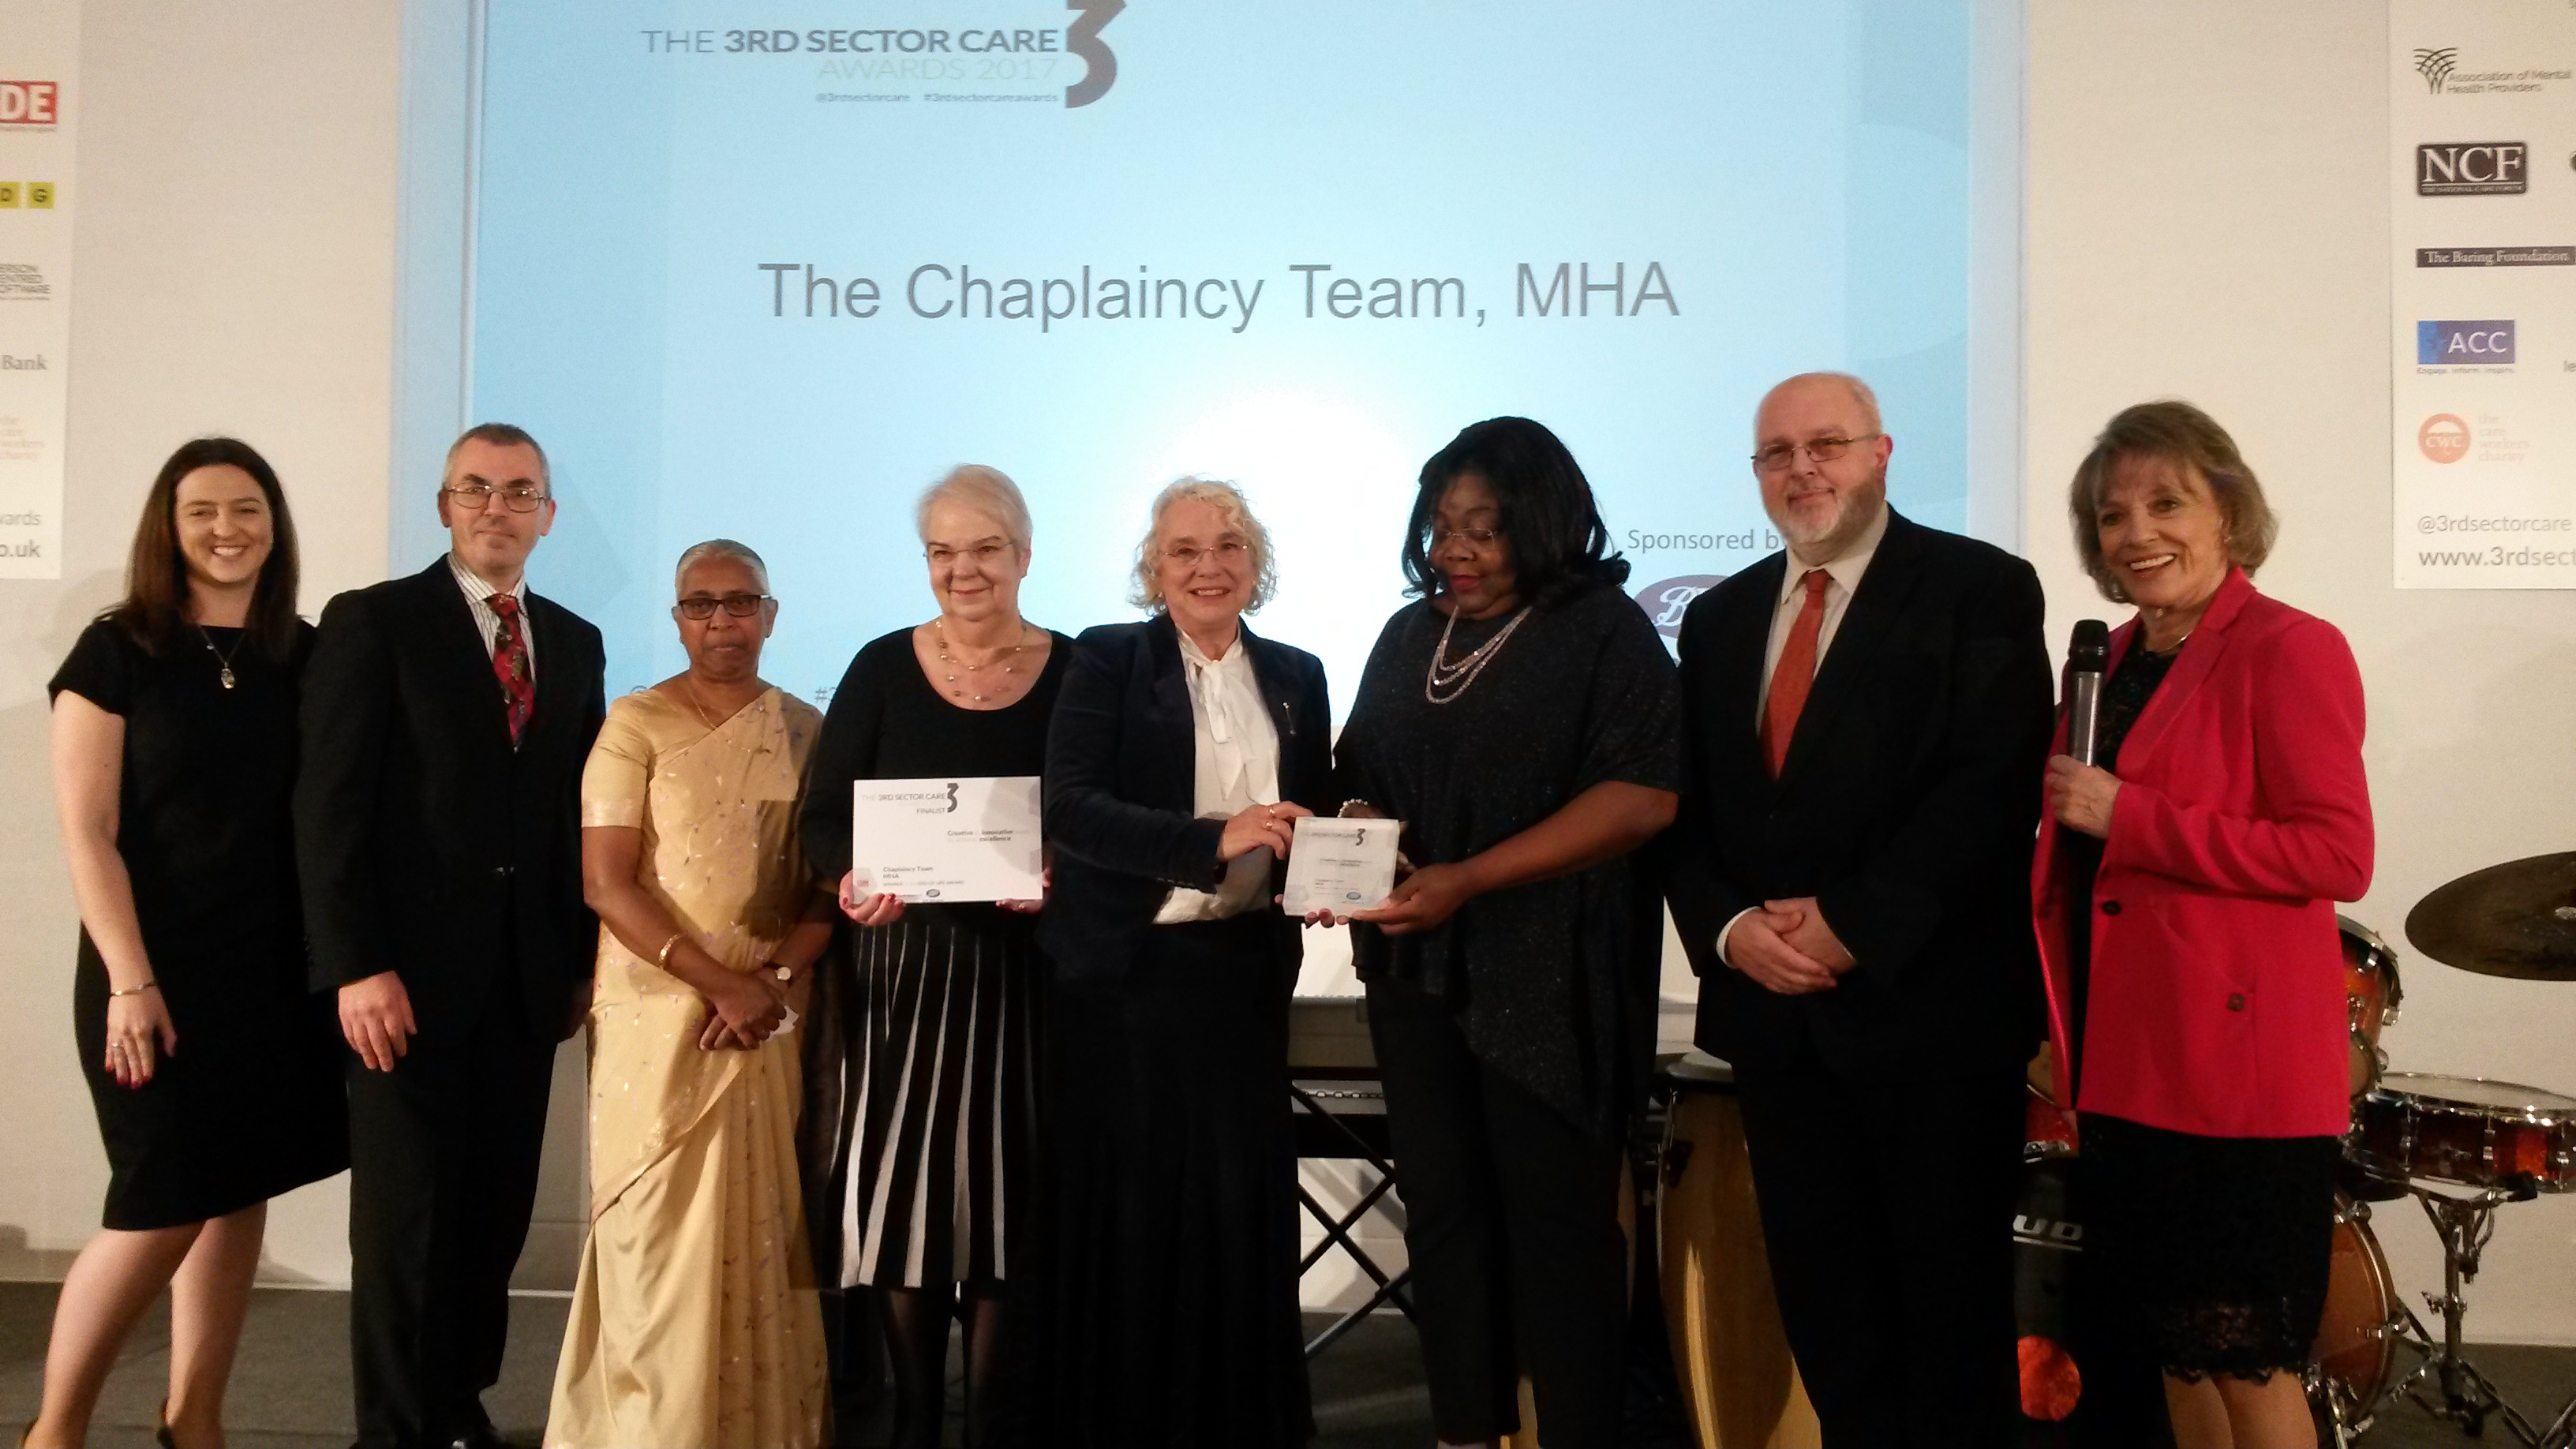 MHA chaplaincy team wins 3rd sector care award